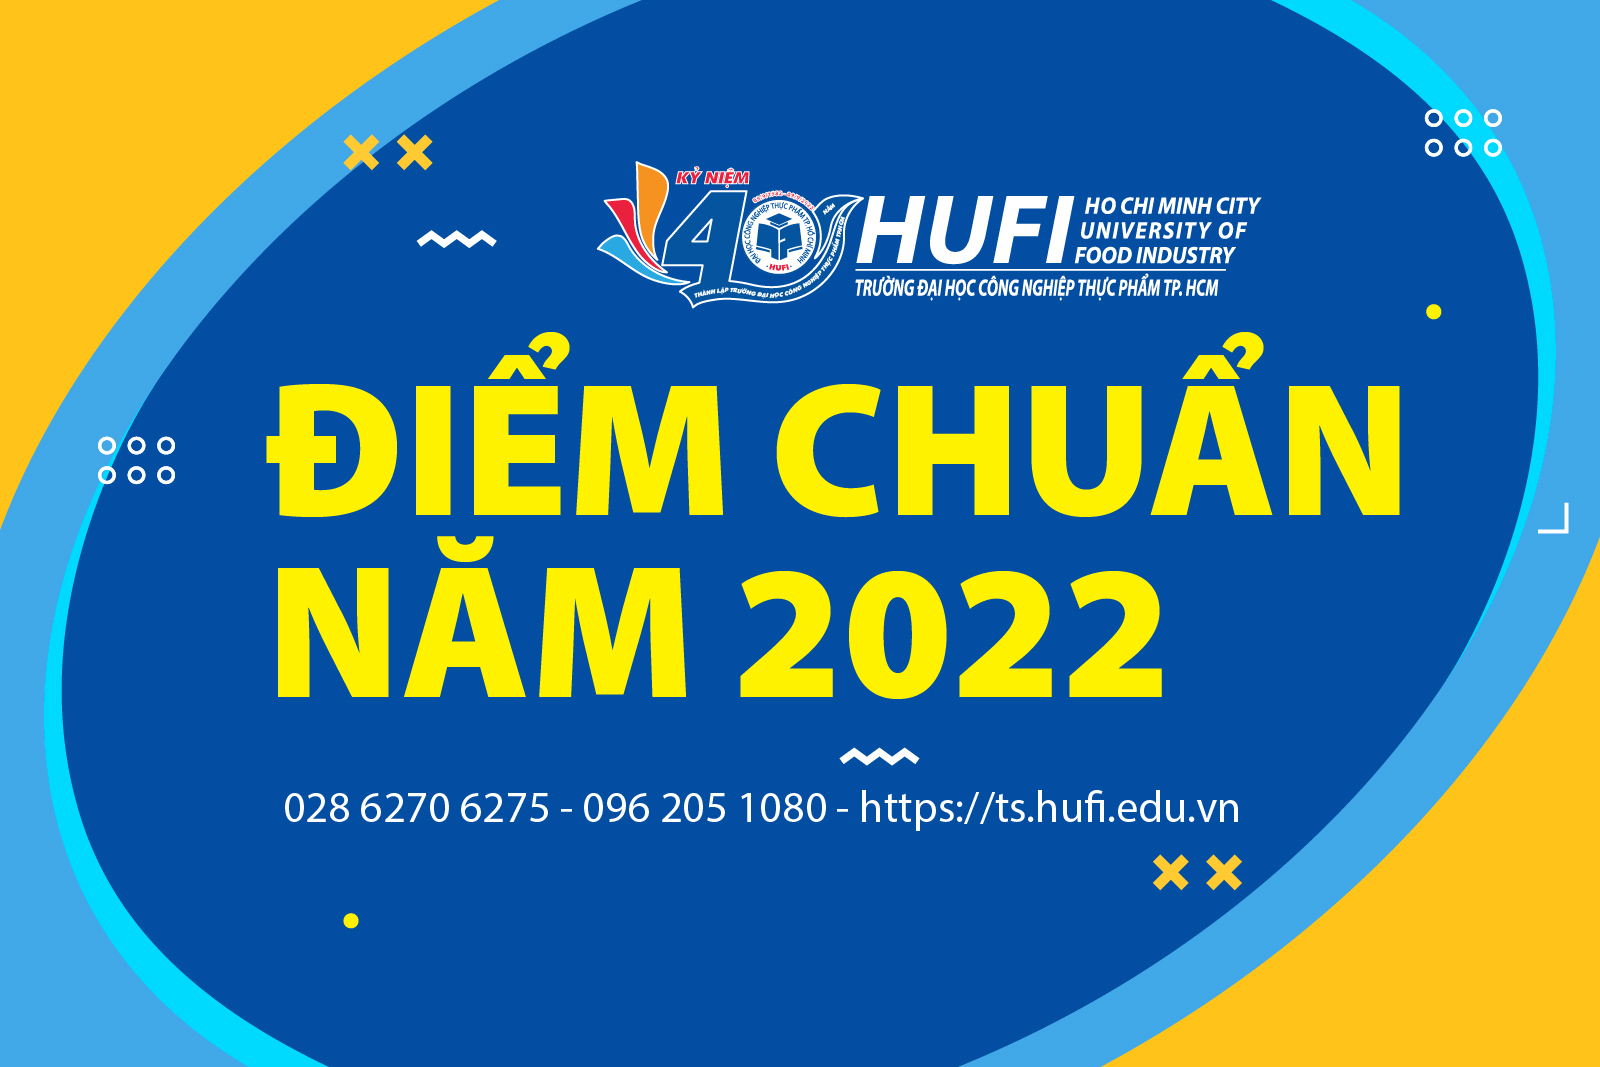 Điểm chuẩn năm 2022: Học bạ THPT, đánh giá năng lực, xét tuyển thẳng theo đề án riêng của HUFI